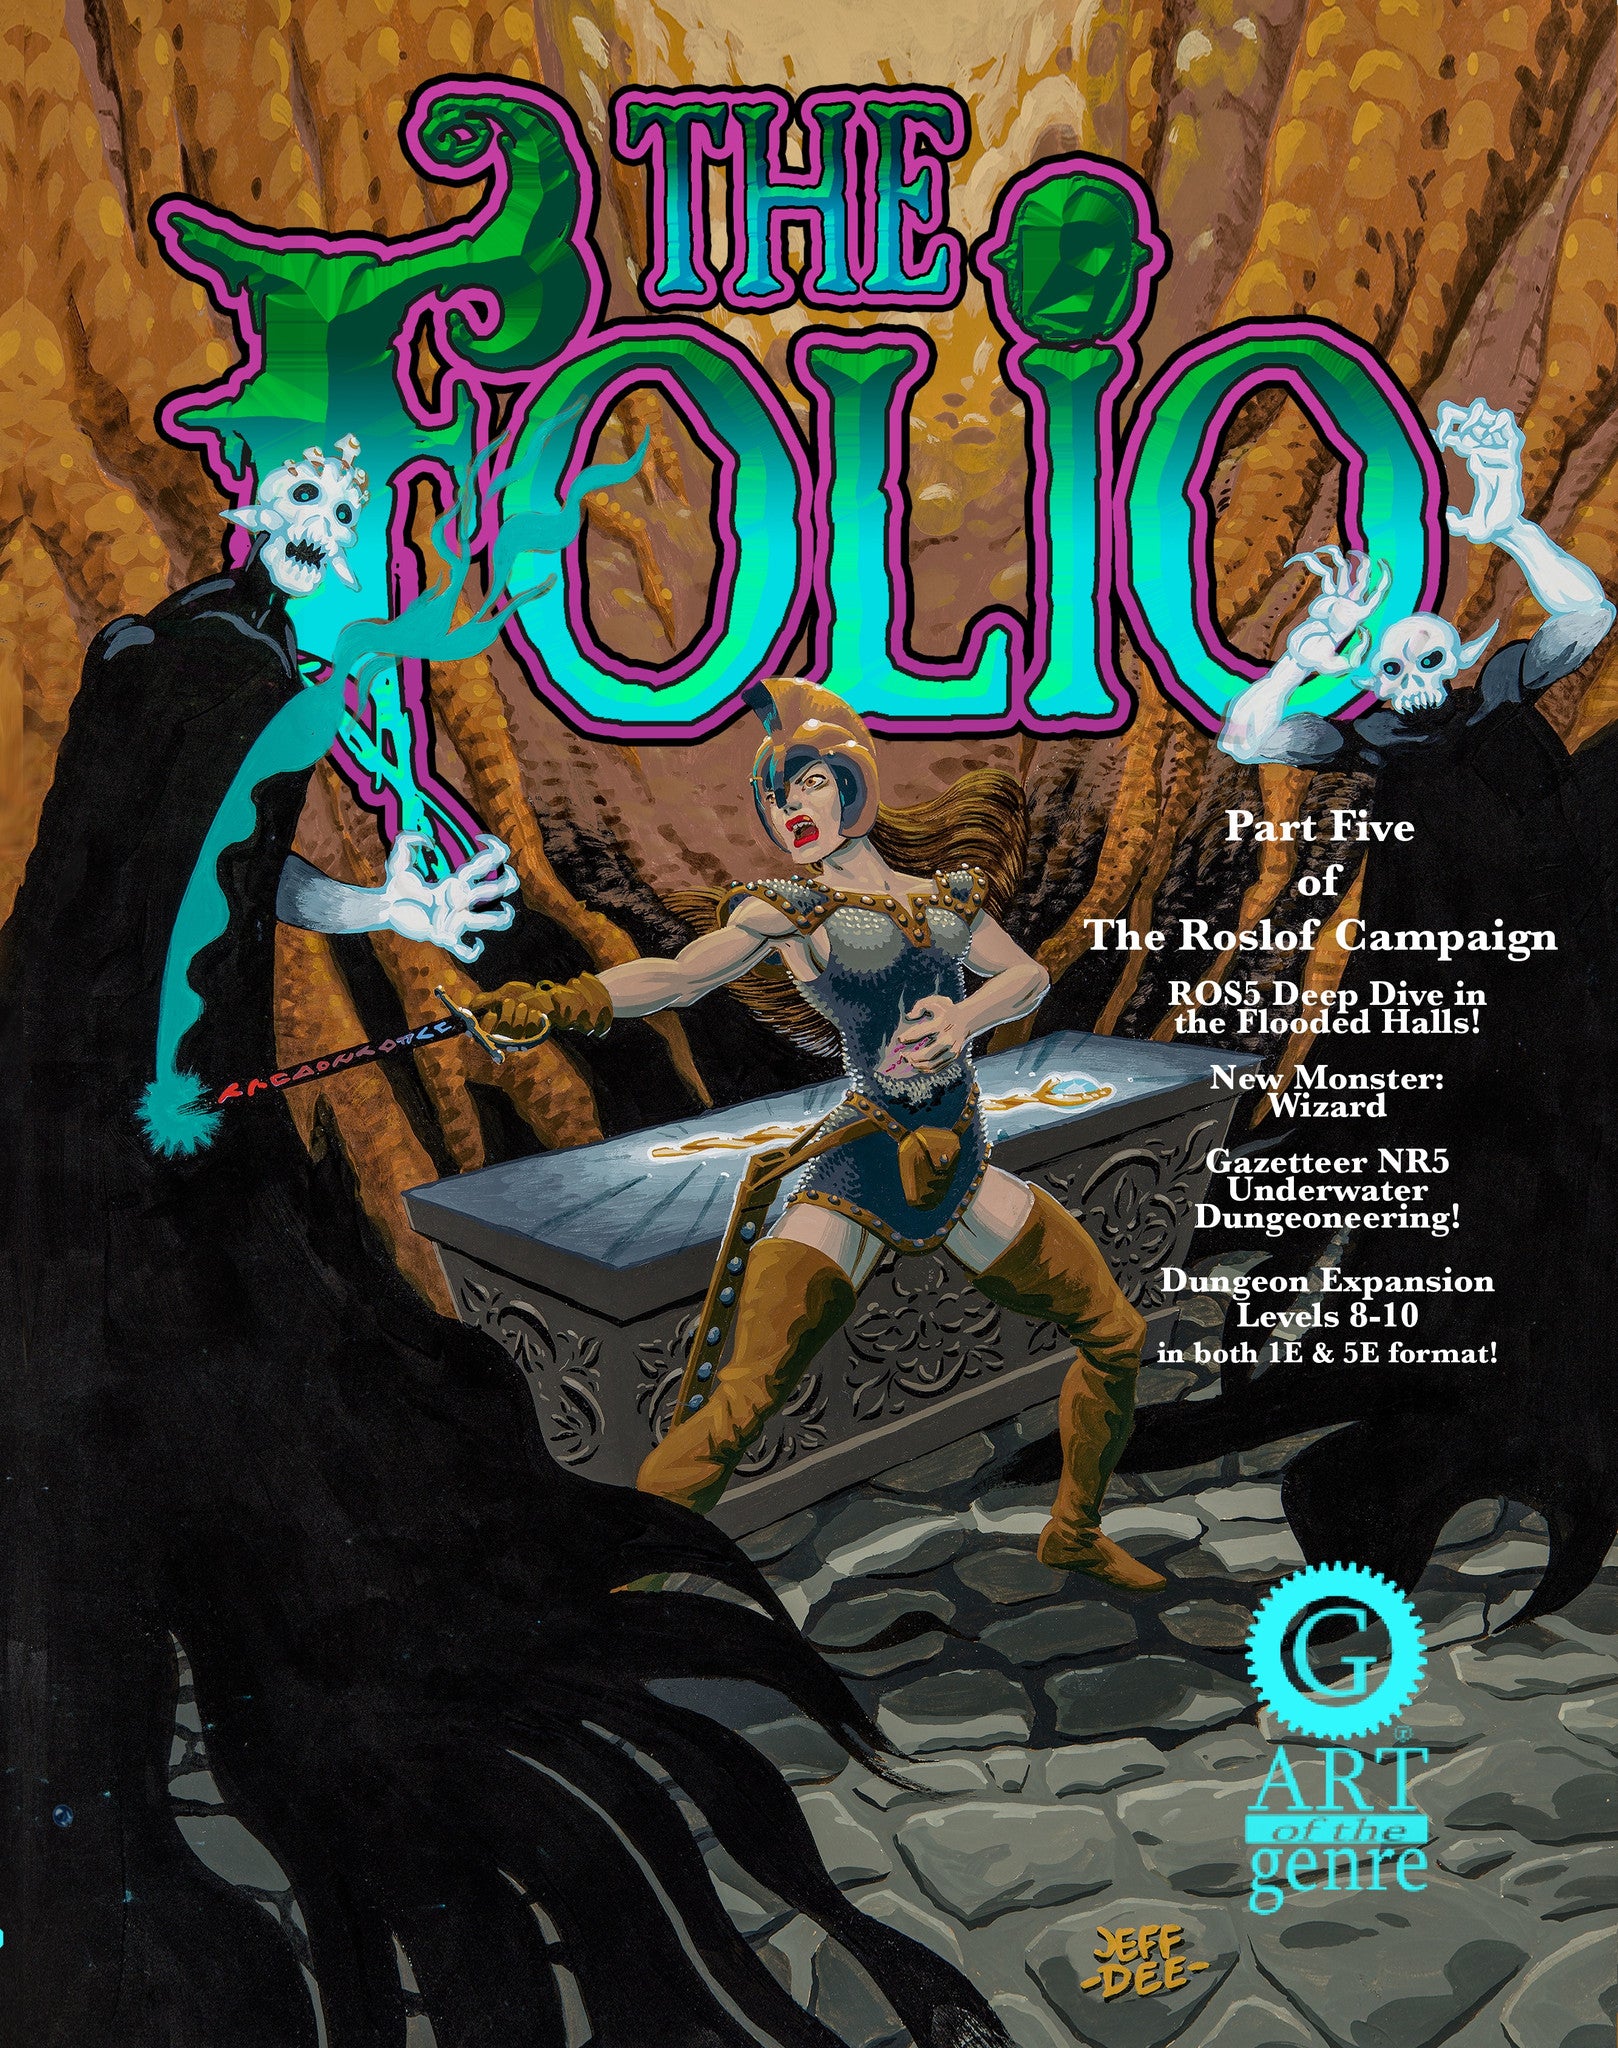 THE FOLIO #5 [PDF EDITION]